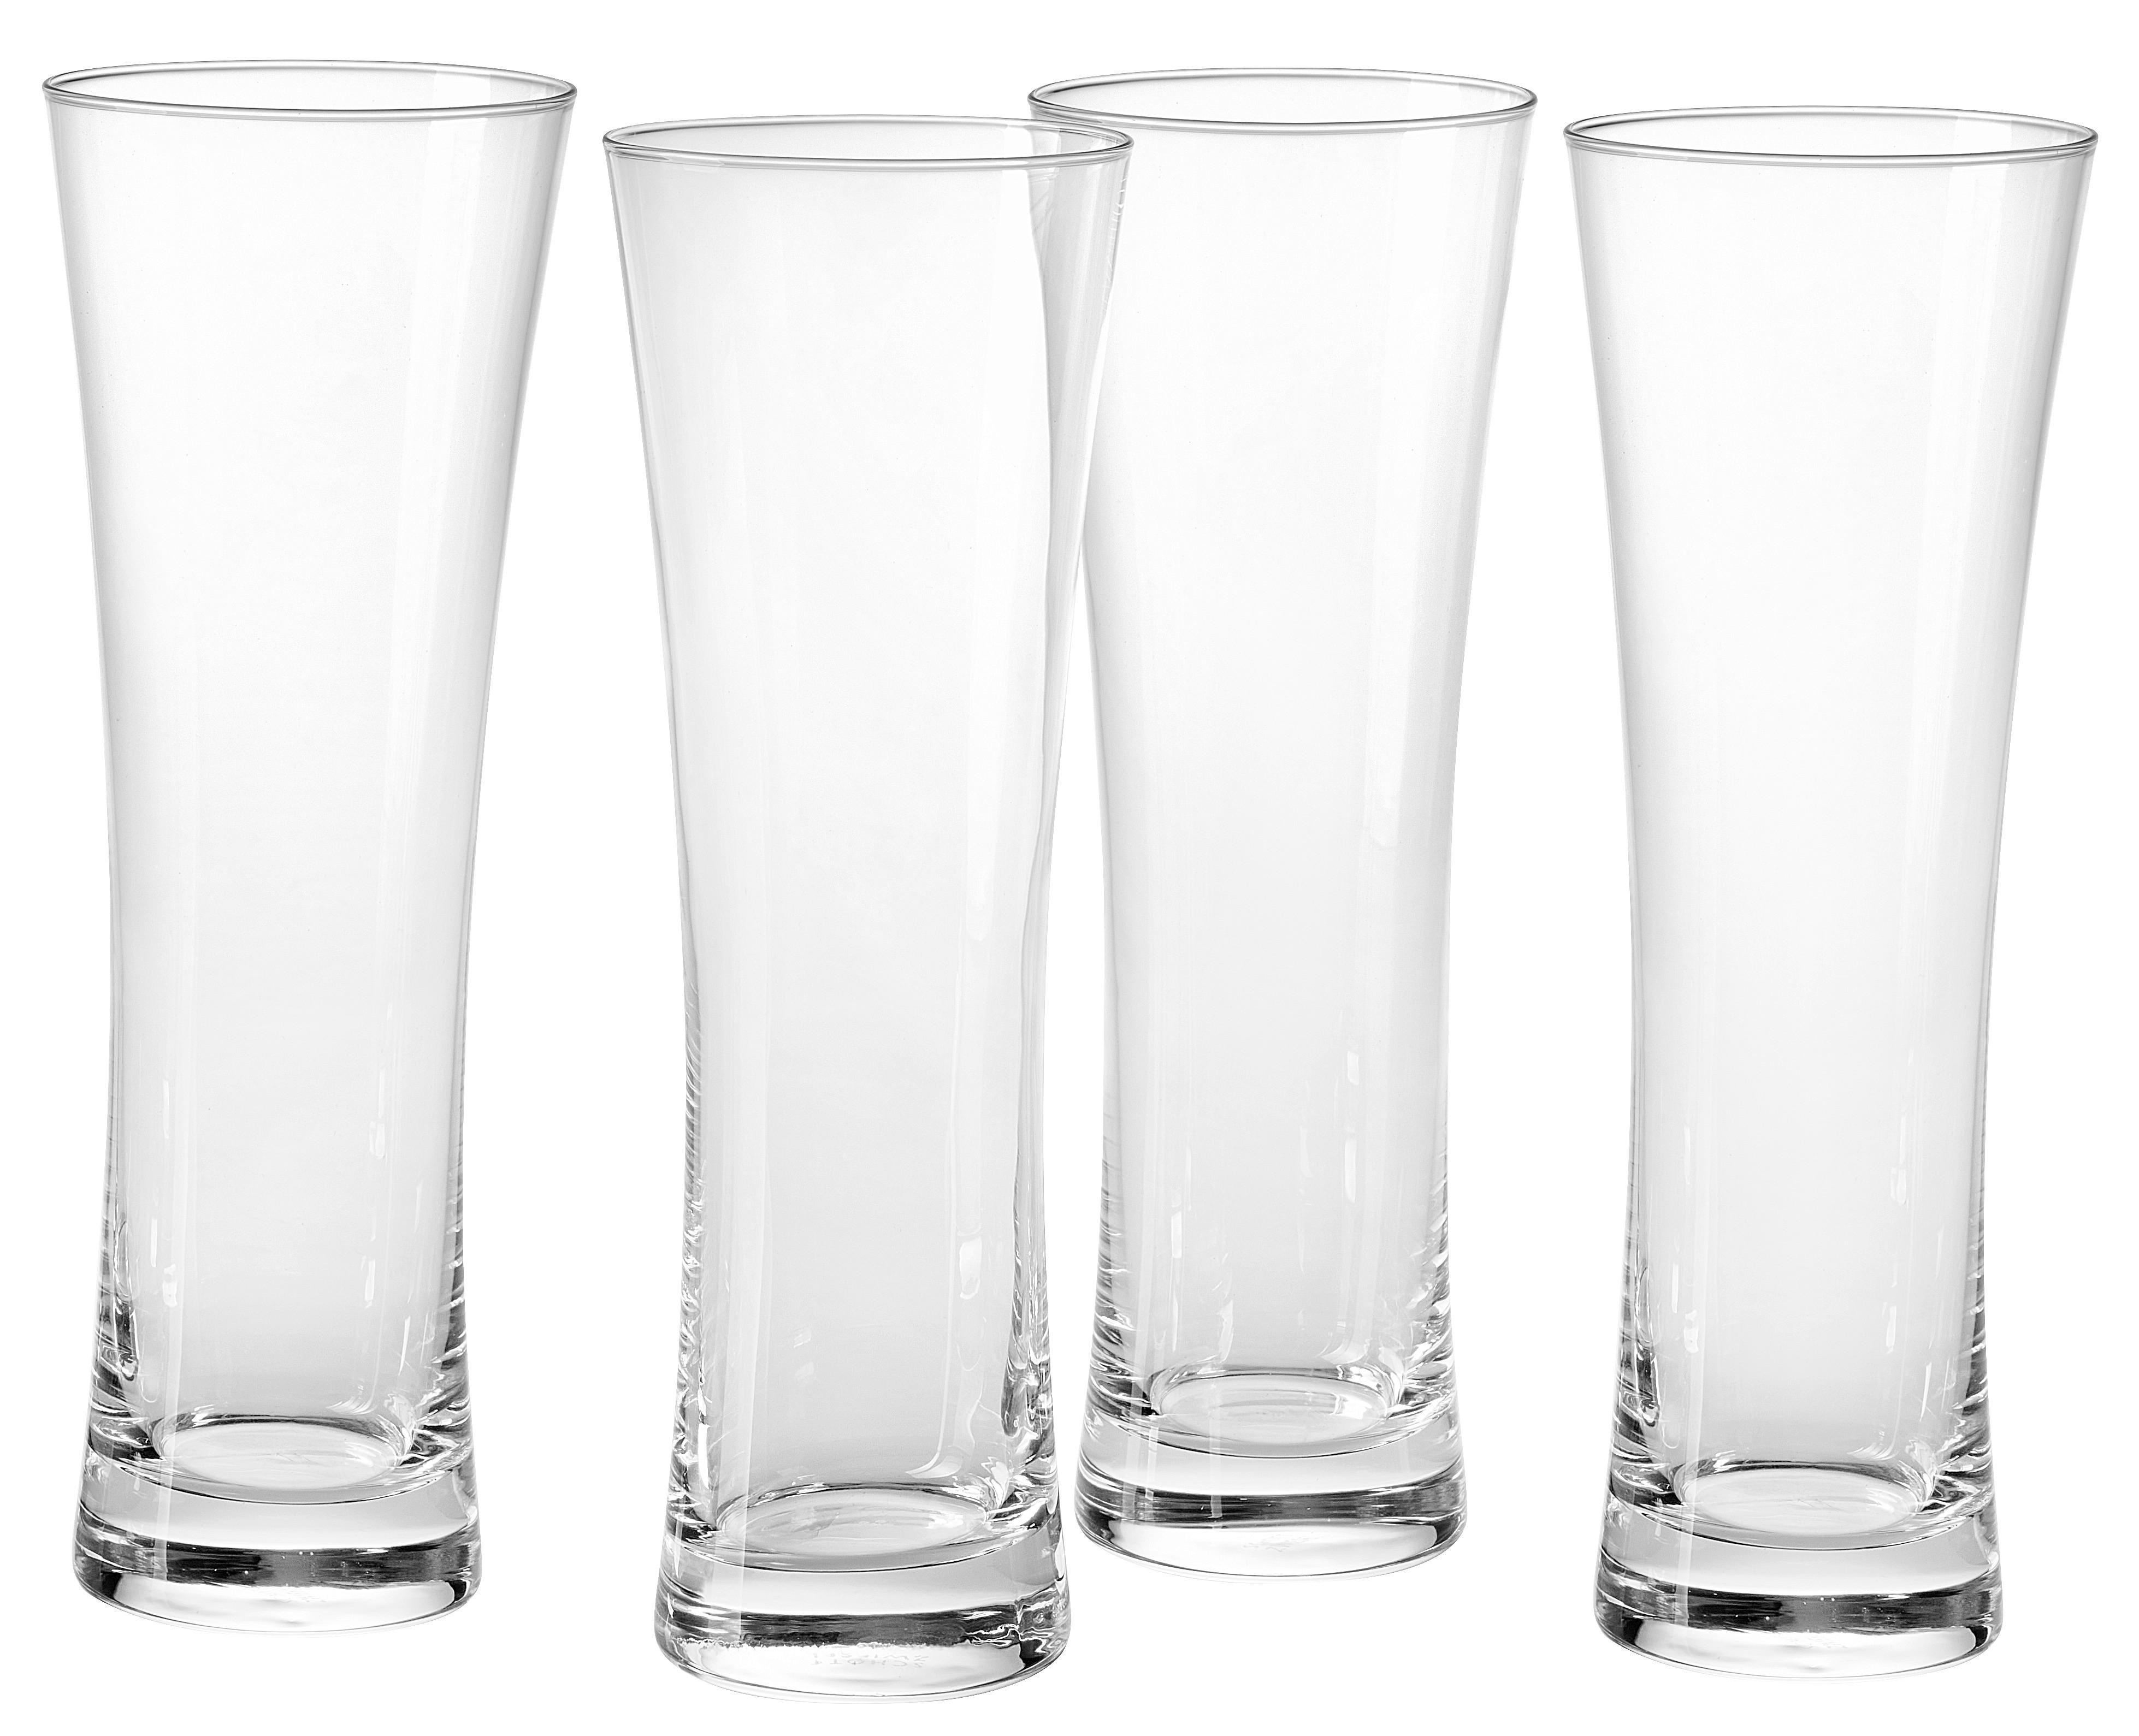 GLÄSERSET Beer Basic 4-teilig  - Klar, KONVENTIONELL, Glas (7,350/21,7cm) - Schott Zwiesel